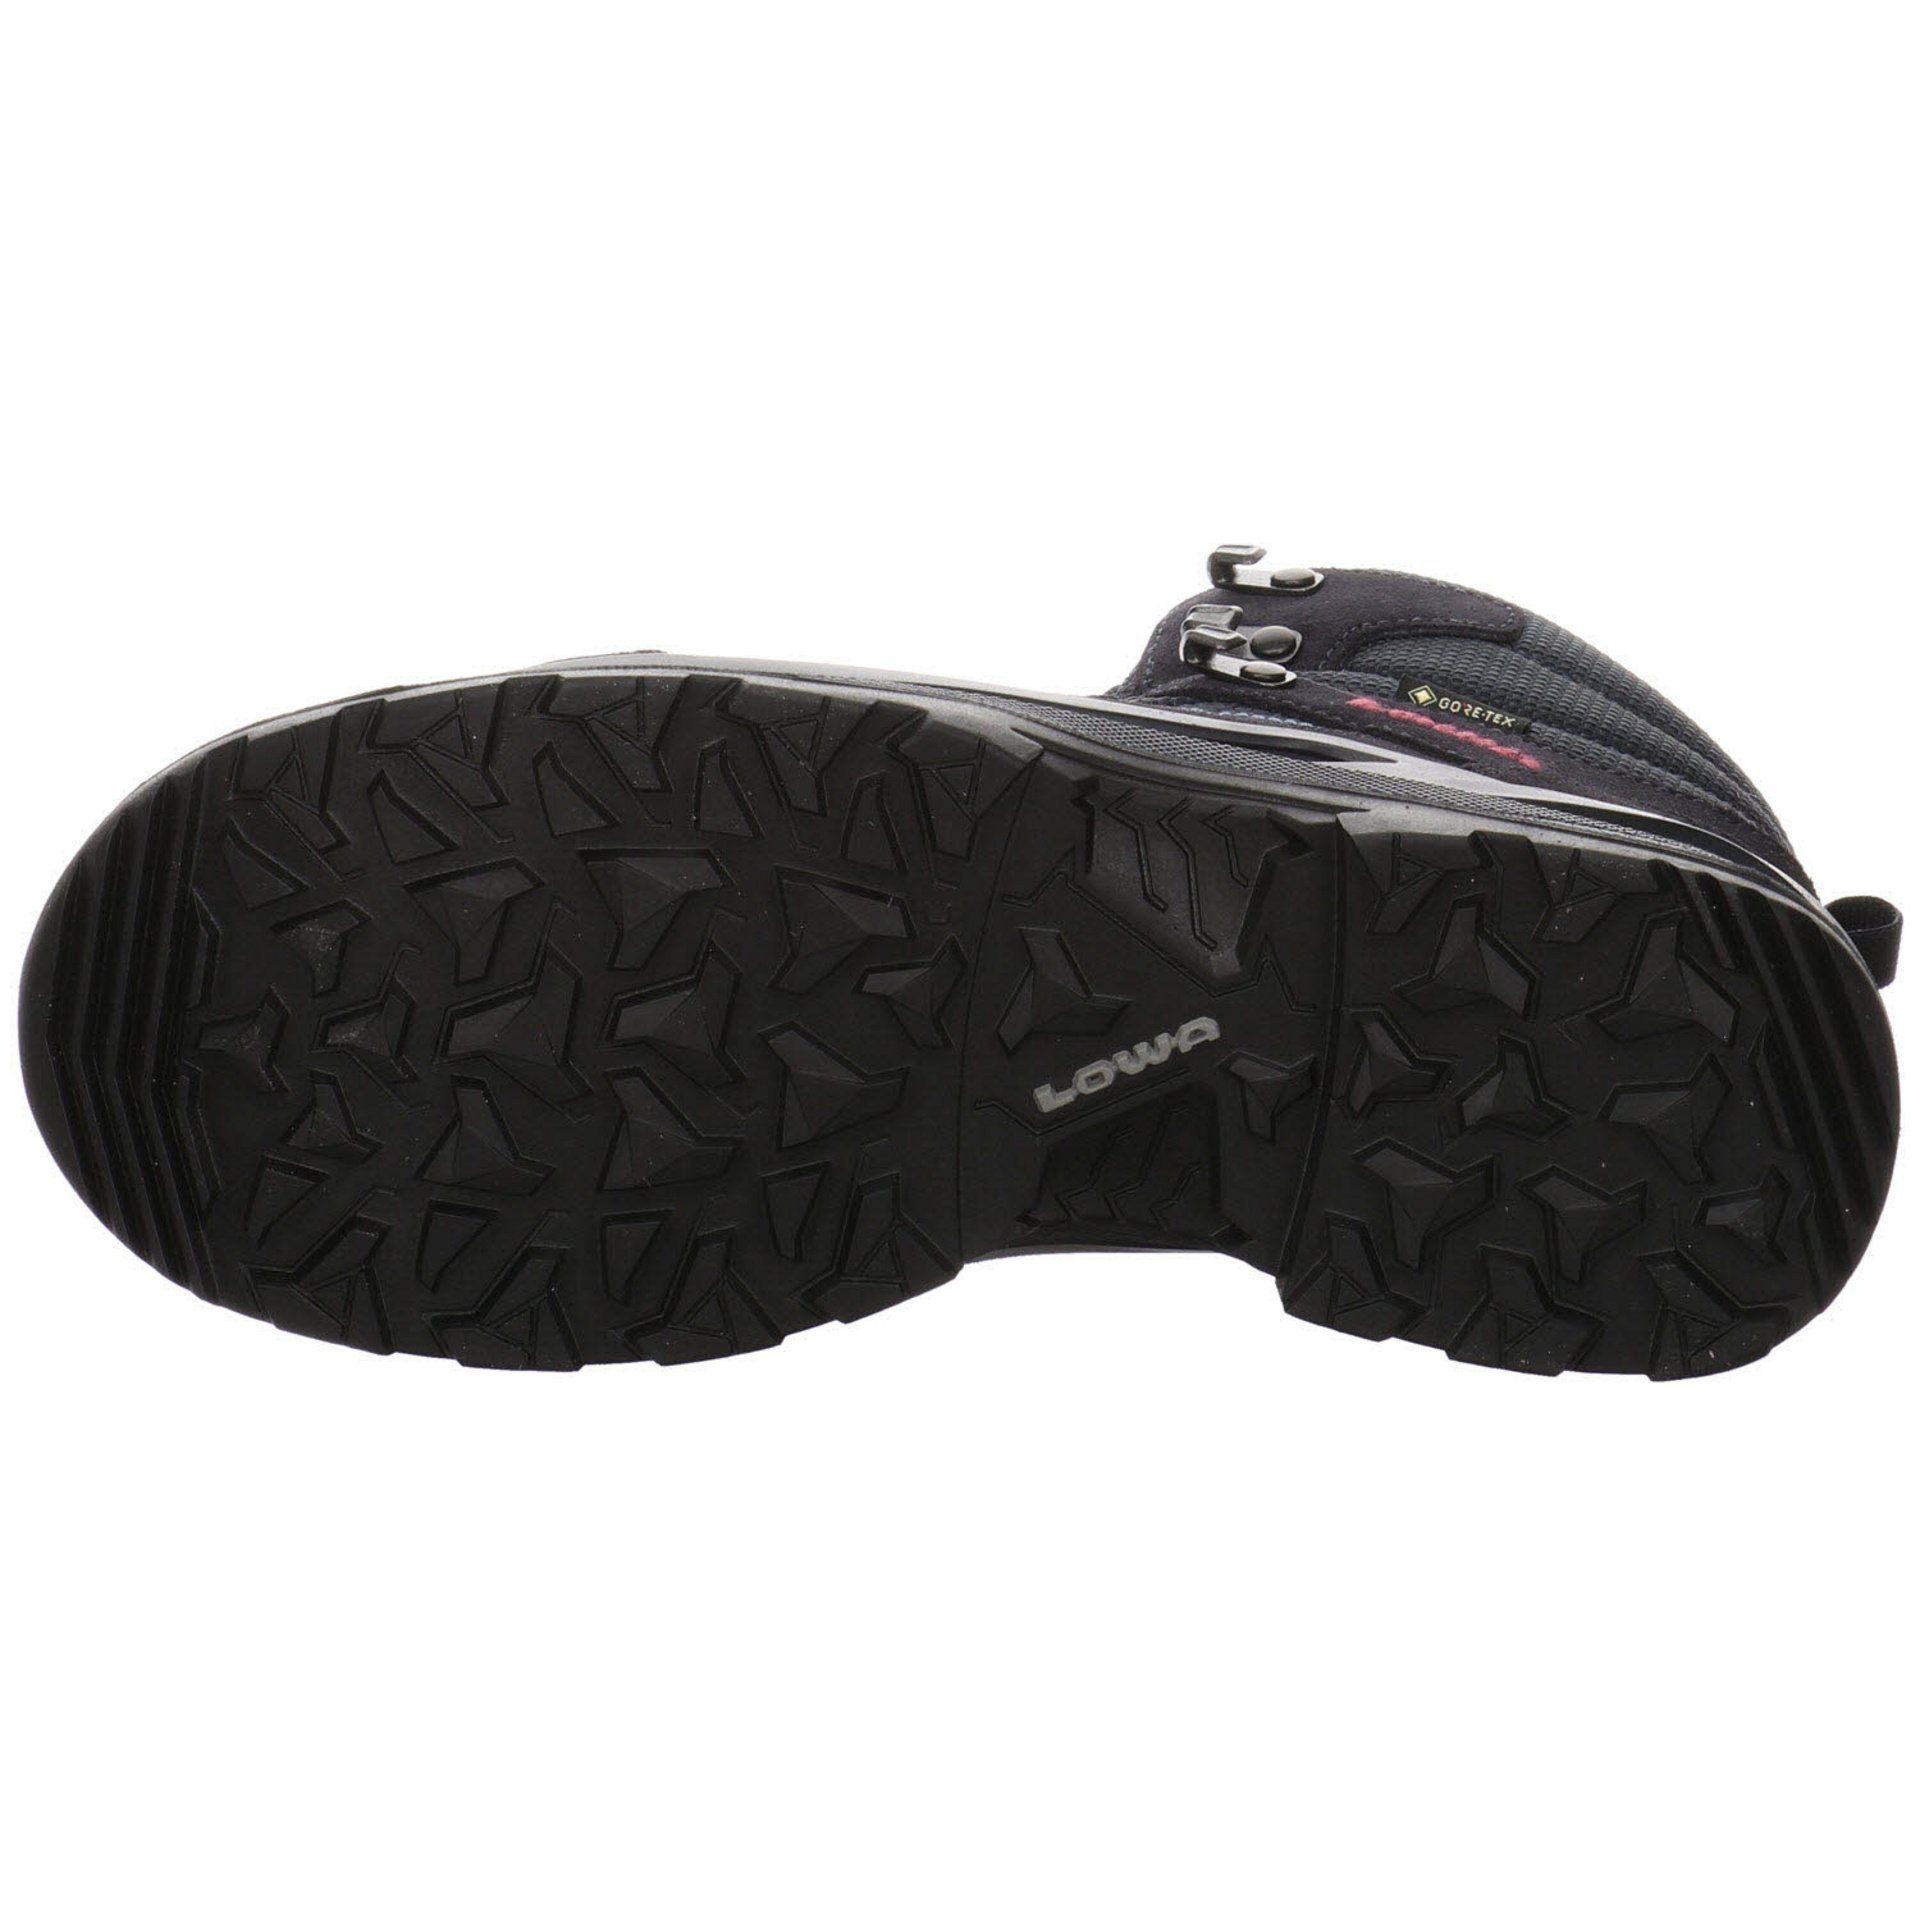 Outdoorschuh Schuhe NAVY Lowa Outdoor Leder-/Textilkombination Damen